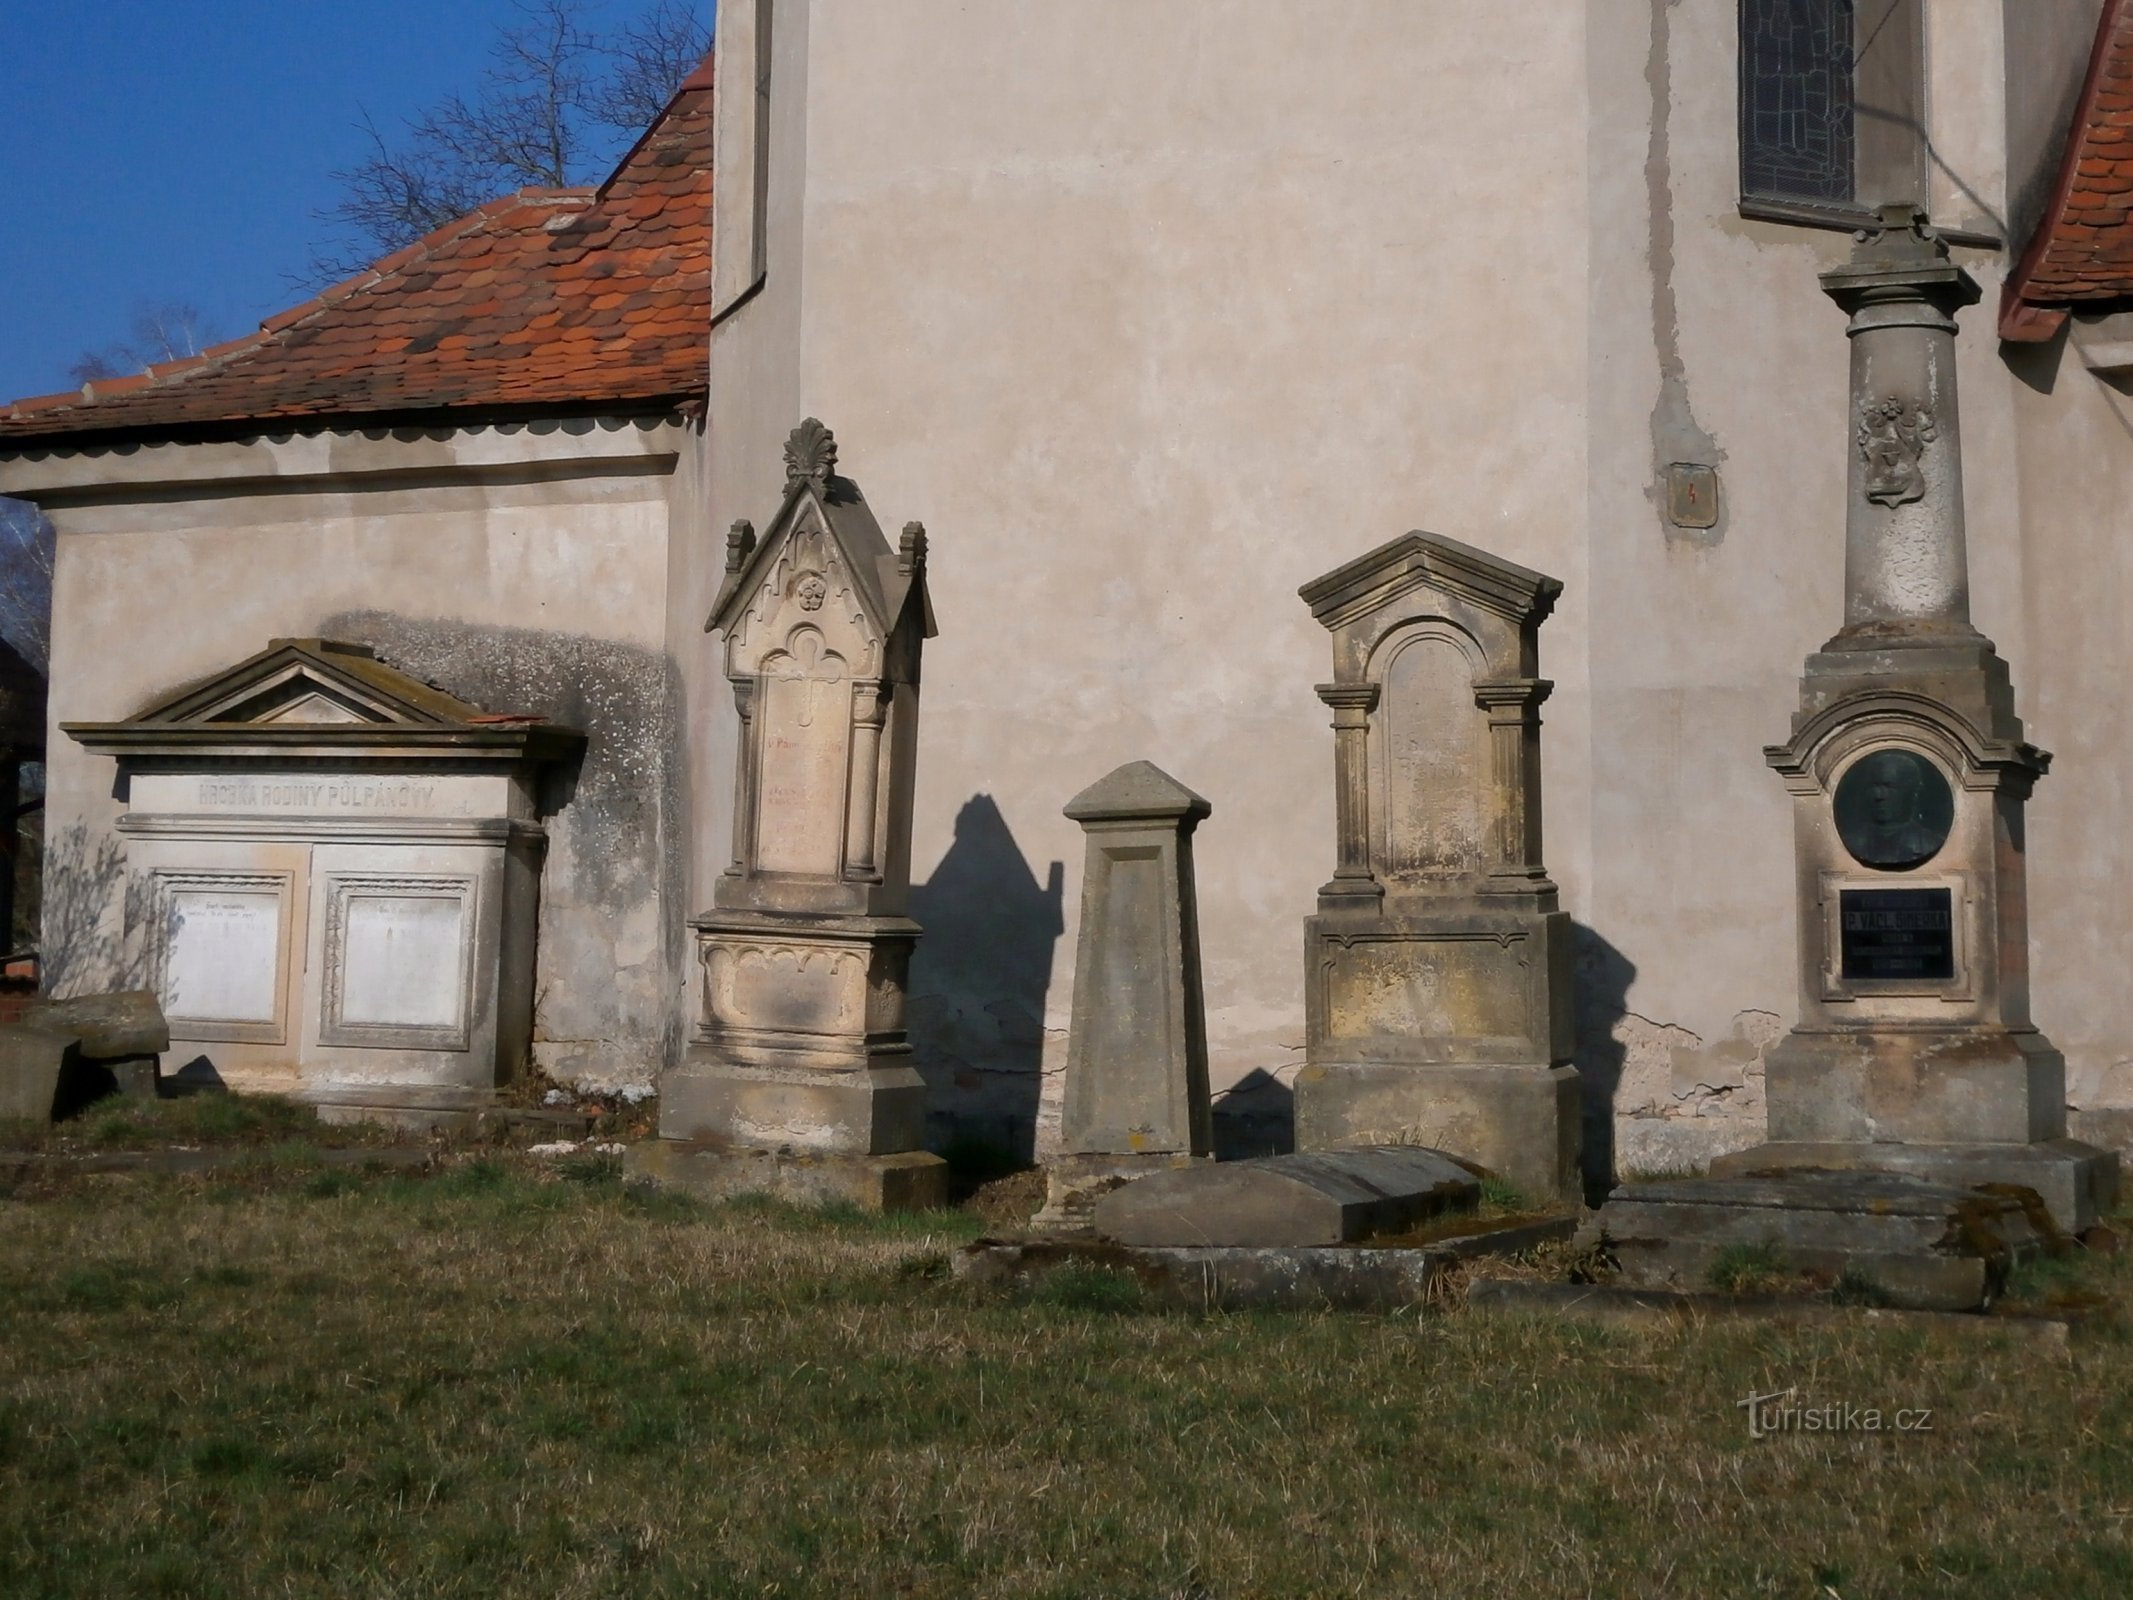 旧墓地的墓碑和 P. Václav Šimerk (Praskačka) 的纪念碑